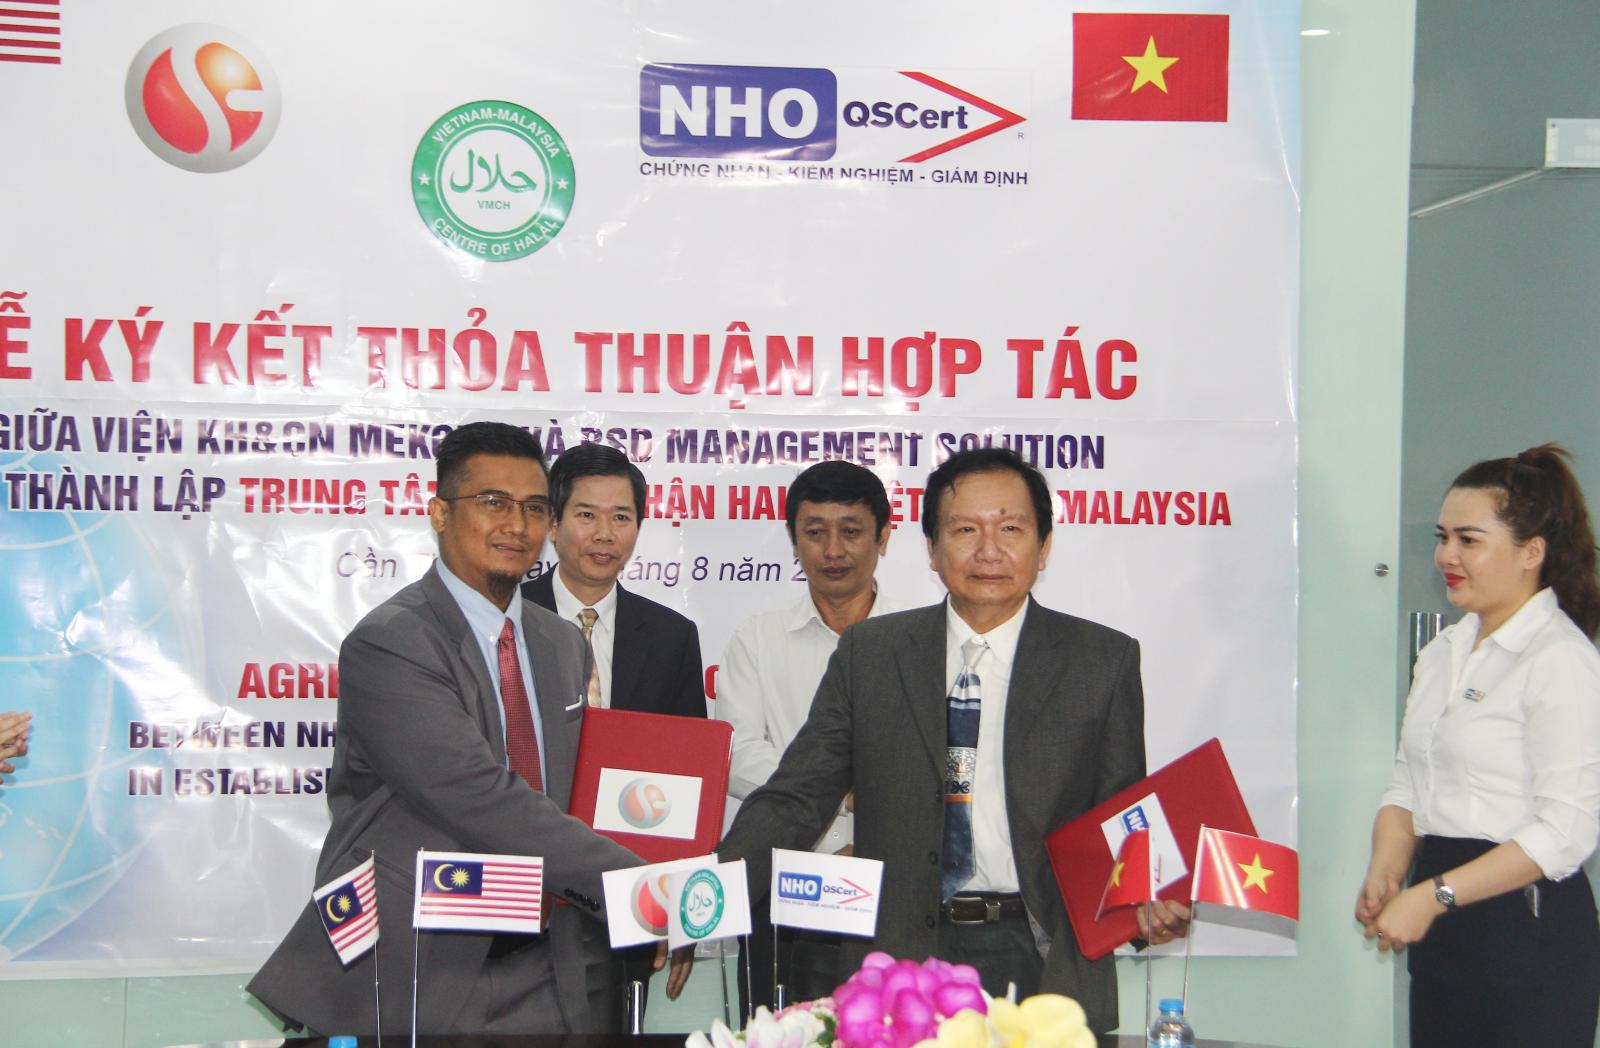 Ký hợp tác giữa Đại diện Viện KH&CN Mekong Cần Thơ Ts. Lê Văn Bảnh và địa diện RSD Management Solution, ông Nor Helmy Mustapha